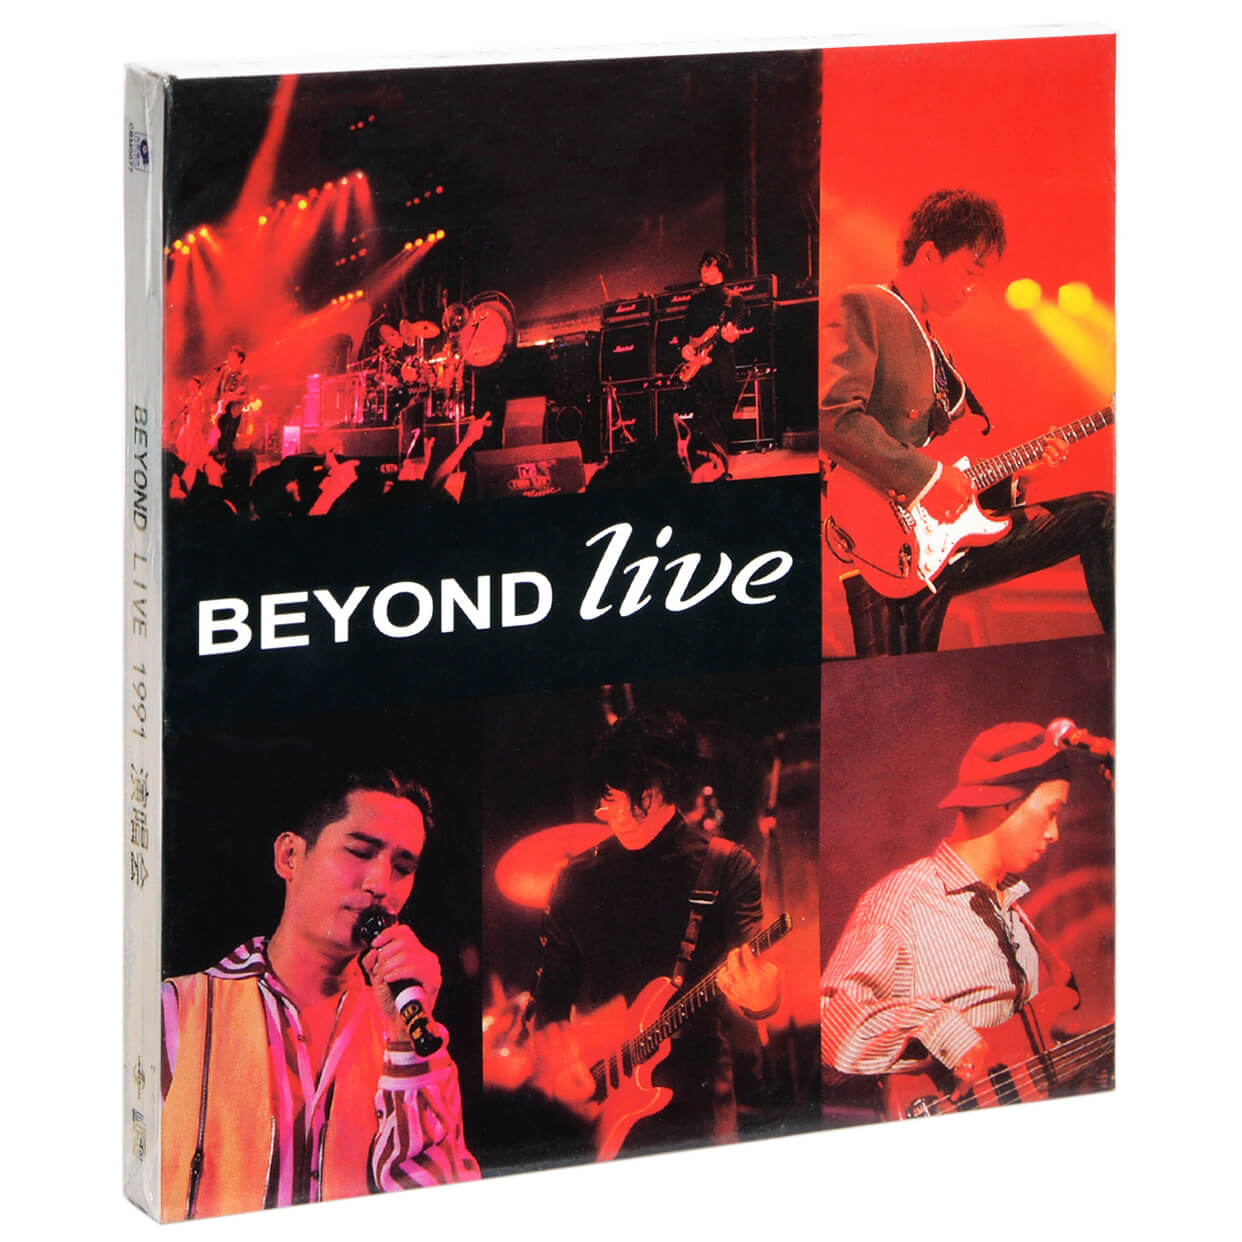 正版唱片 Beyond乐队专辑 1991演唱会Live 车载CD碟片 环球复黑王 音乐/影视/明星/音像 音乐CD/DVD 原图主图